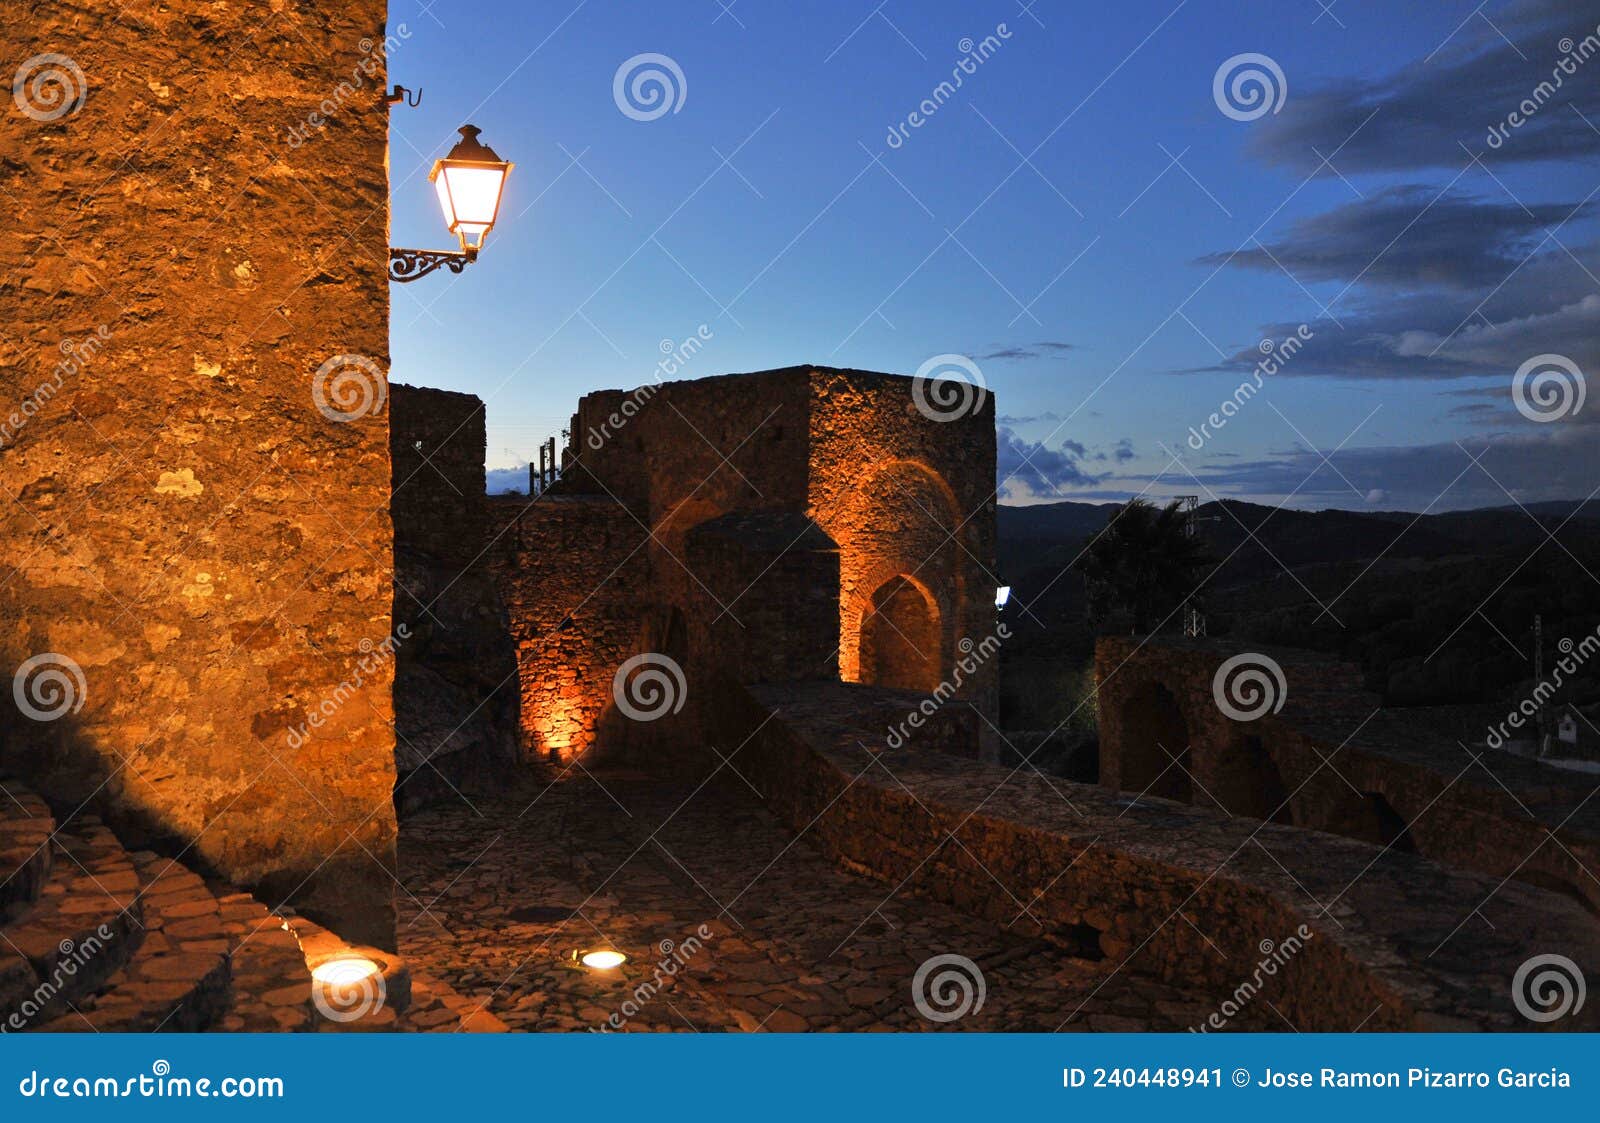 castillo de castellar de la frontera de noche, provincia de cÃÂ¡diz, espaÃÂ±a